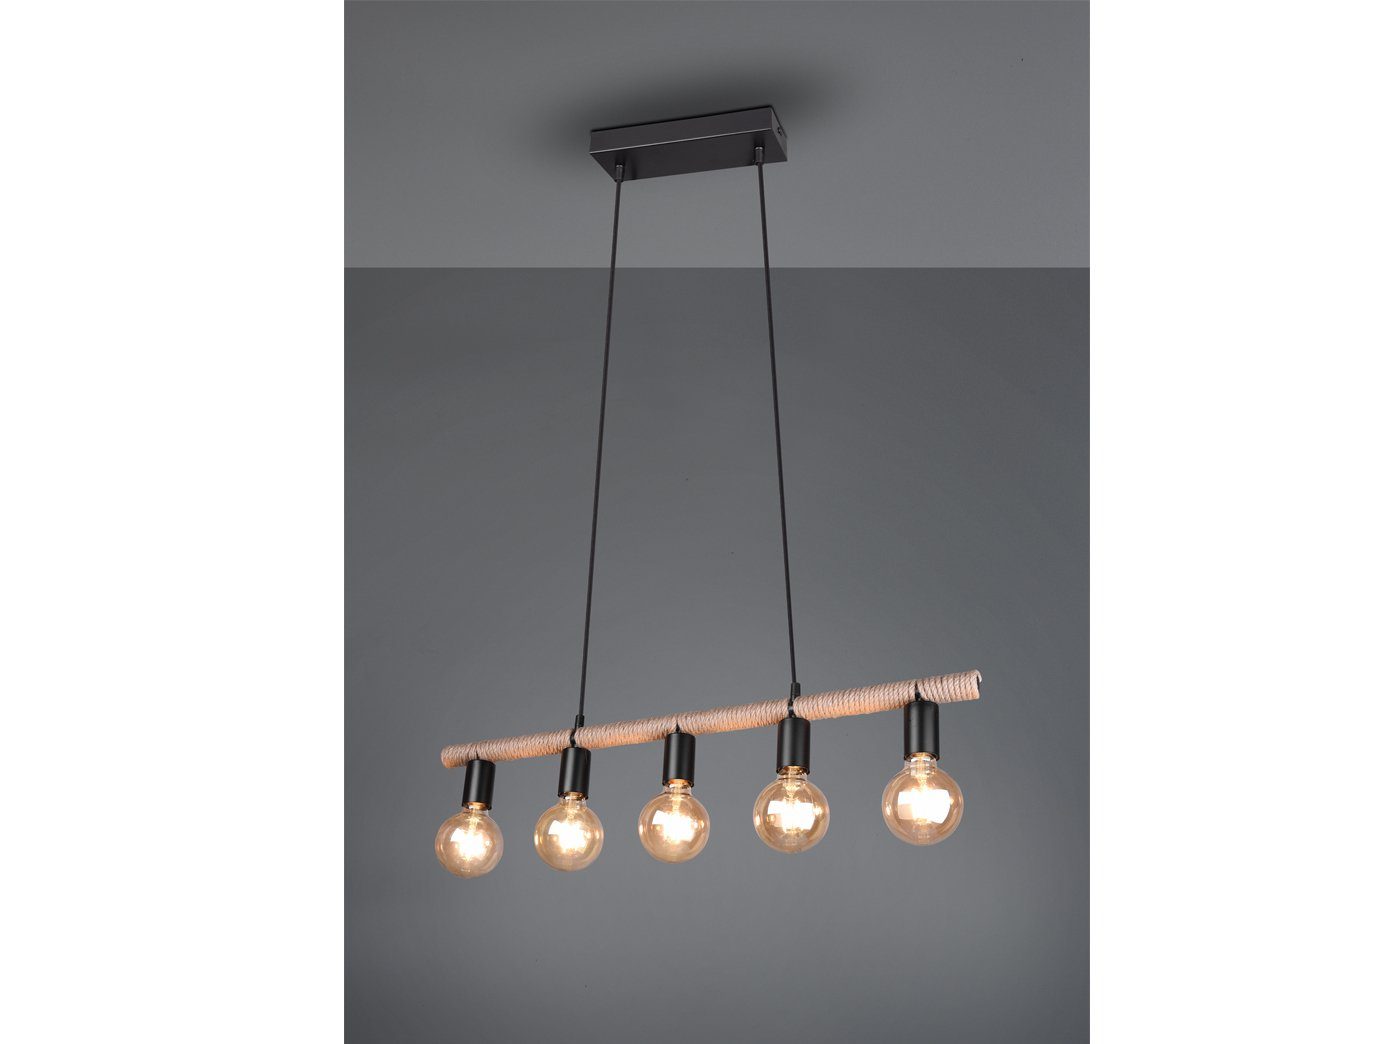 TRIO LED Pendelleuchte, ausgefallene Dimmfunktion, LED Esstisch B Seil-lampe für 80cm wechselbar, Warmweiß, Edison mehrflammig, über-n